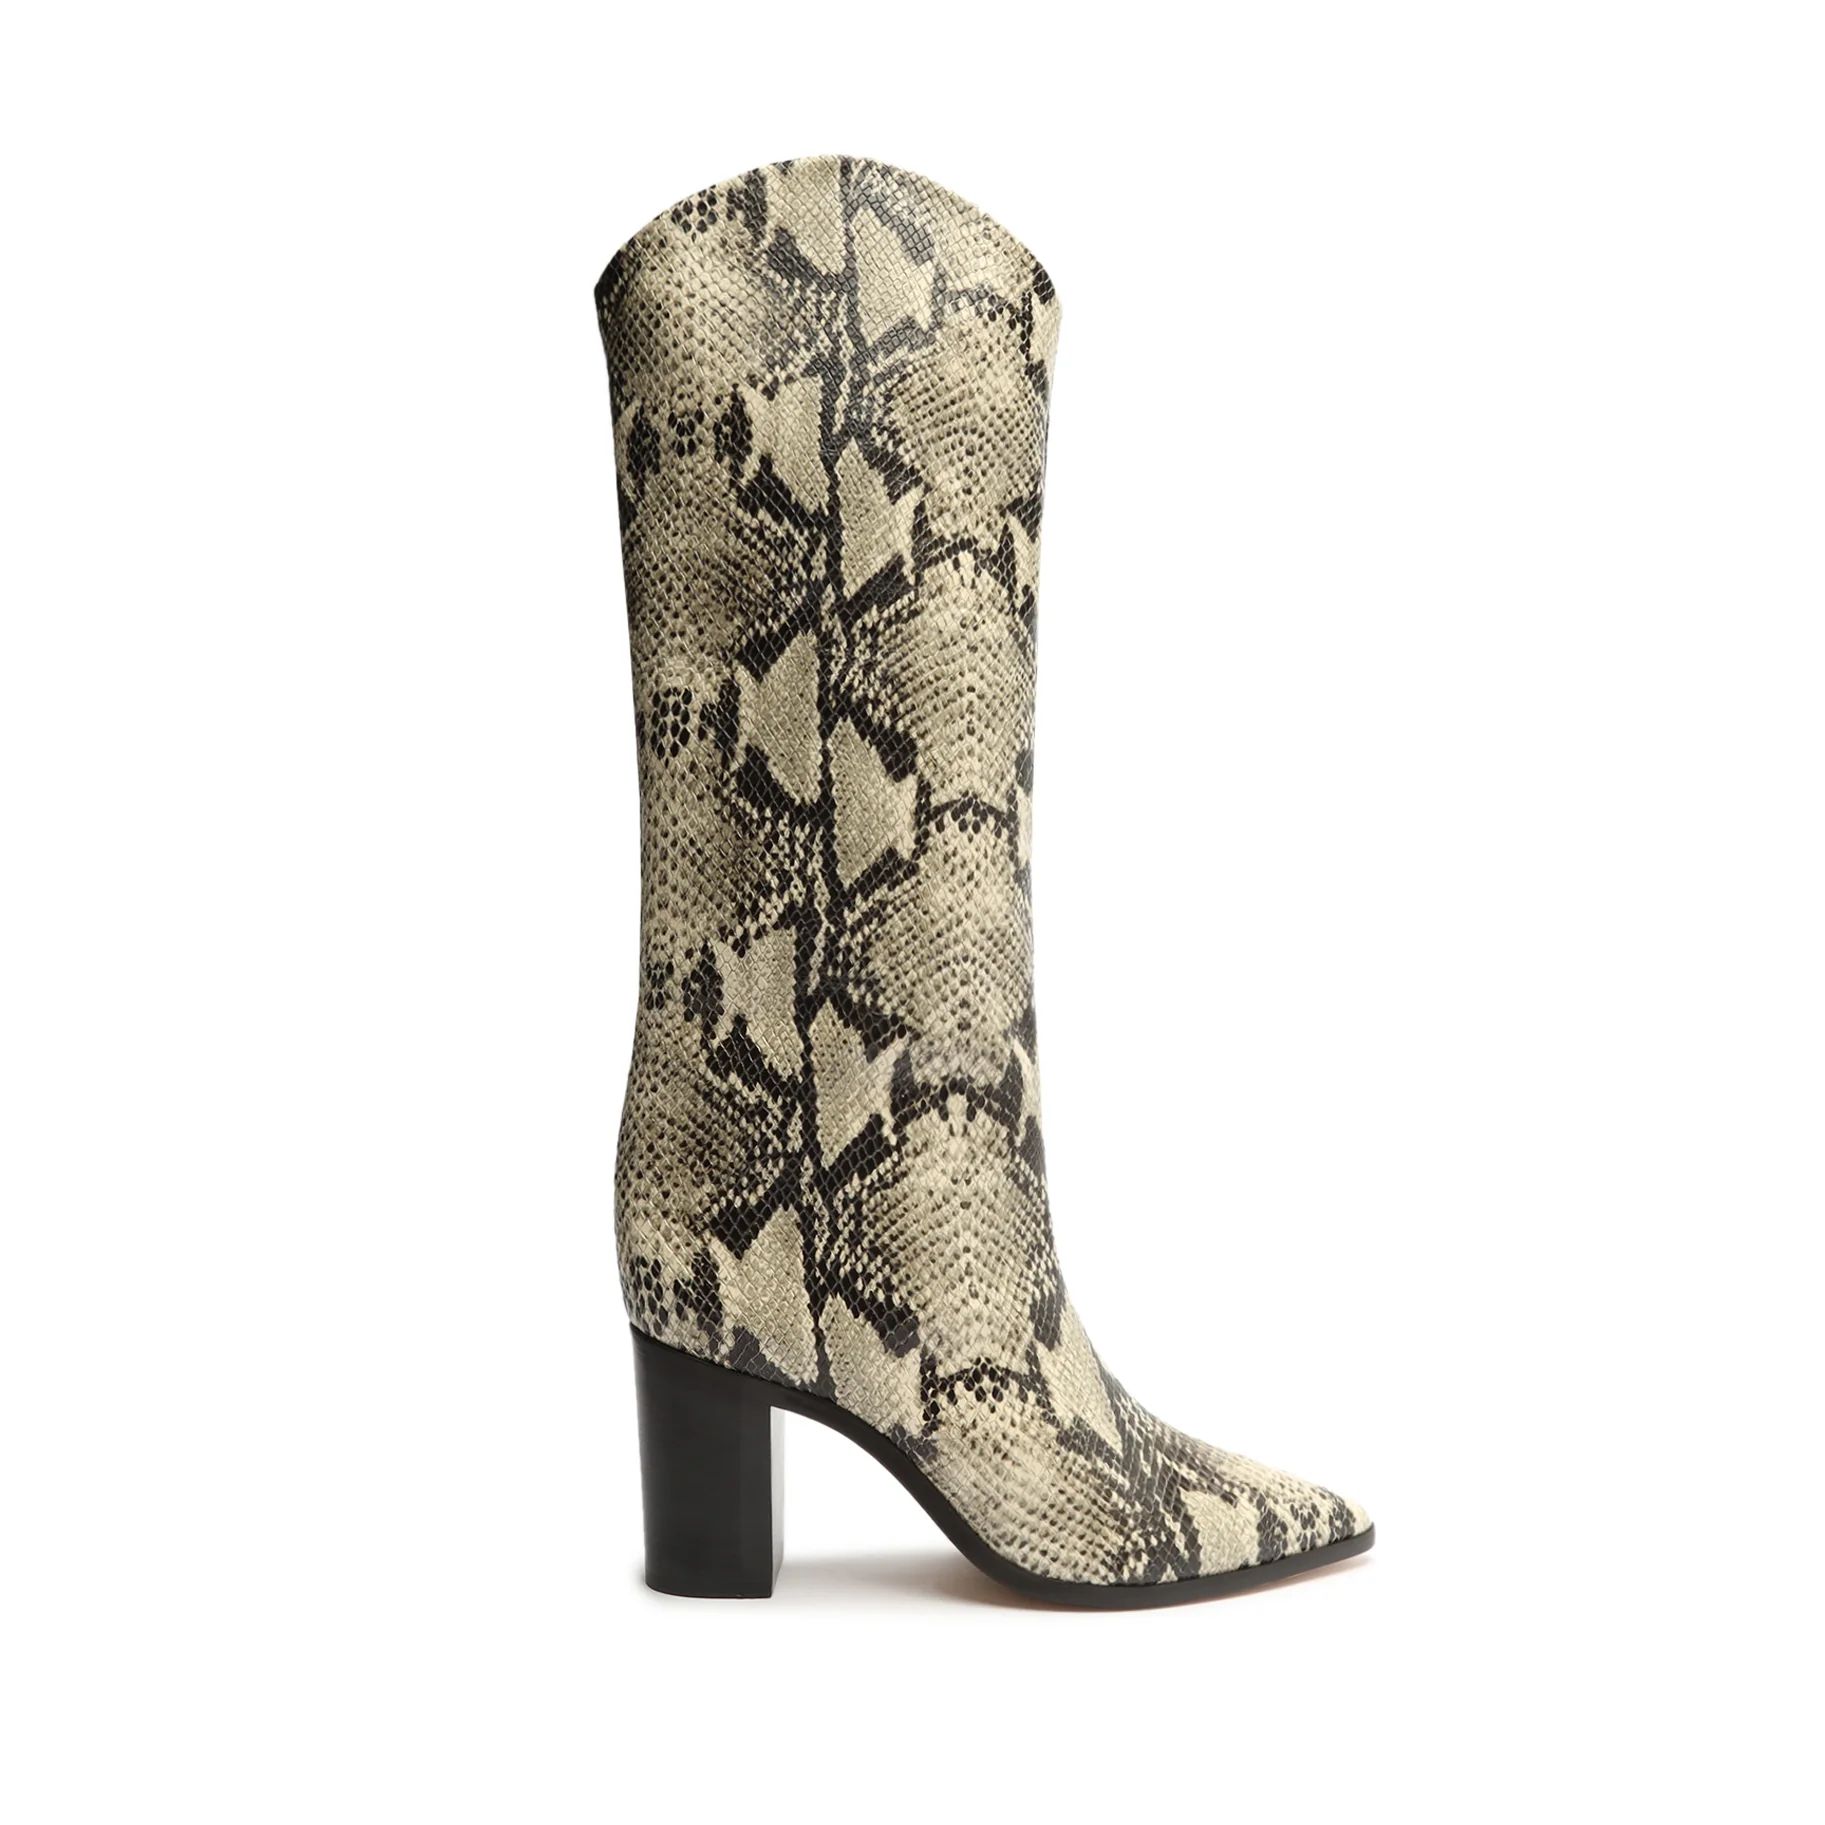 Maryana Block Pointed Toe Block Heel Boot in Snake Print | Schutz Shoes | Schutz Shoes (US)